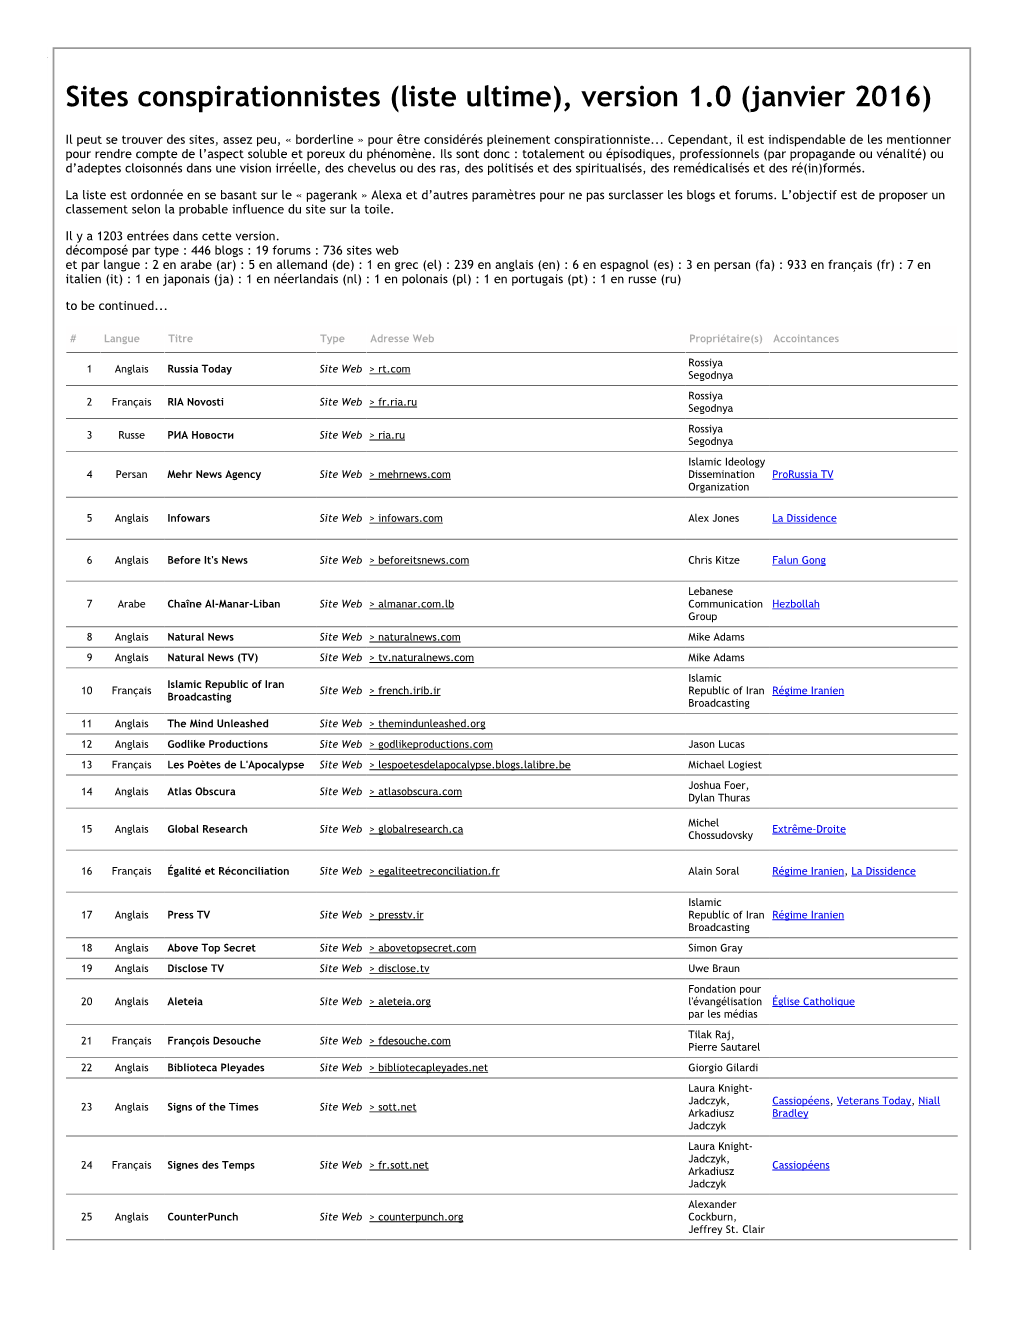 Sites Conspirationnistes (Liste Ultime), Version 1.0 (Janvier 2016)